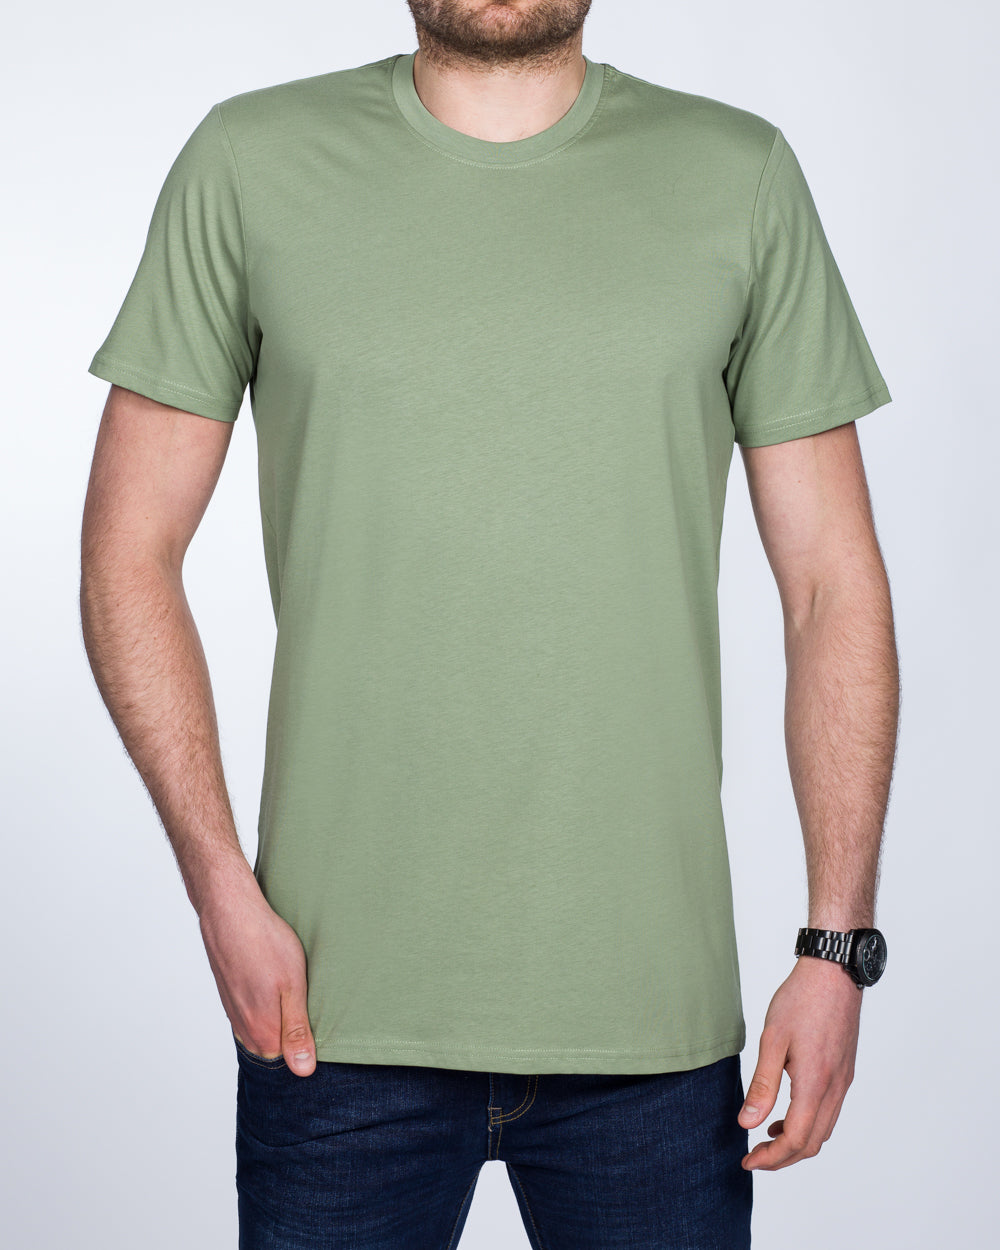 Girav Sydney Extra Tall T-Shirt (sea green)